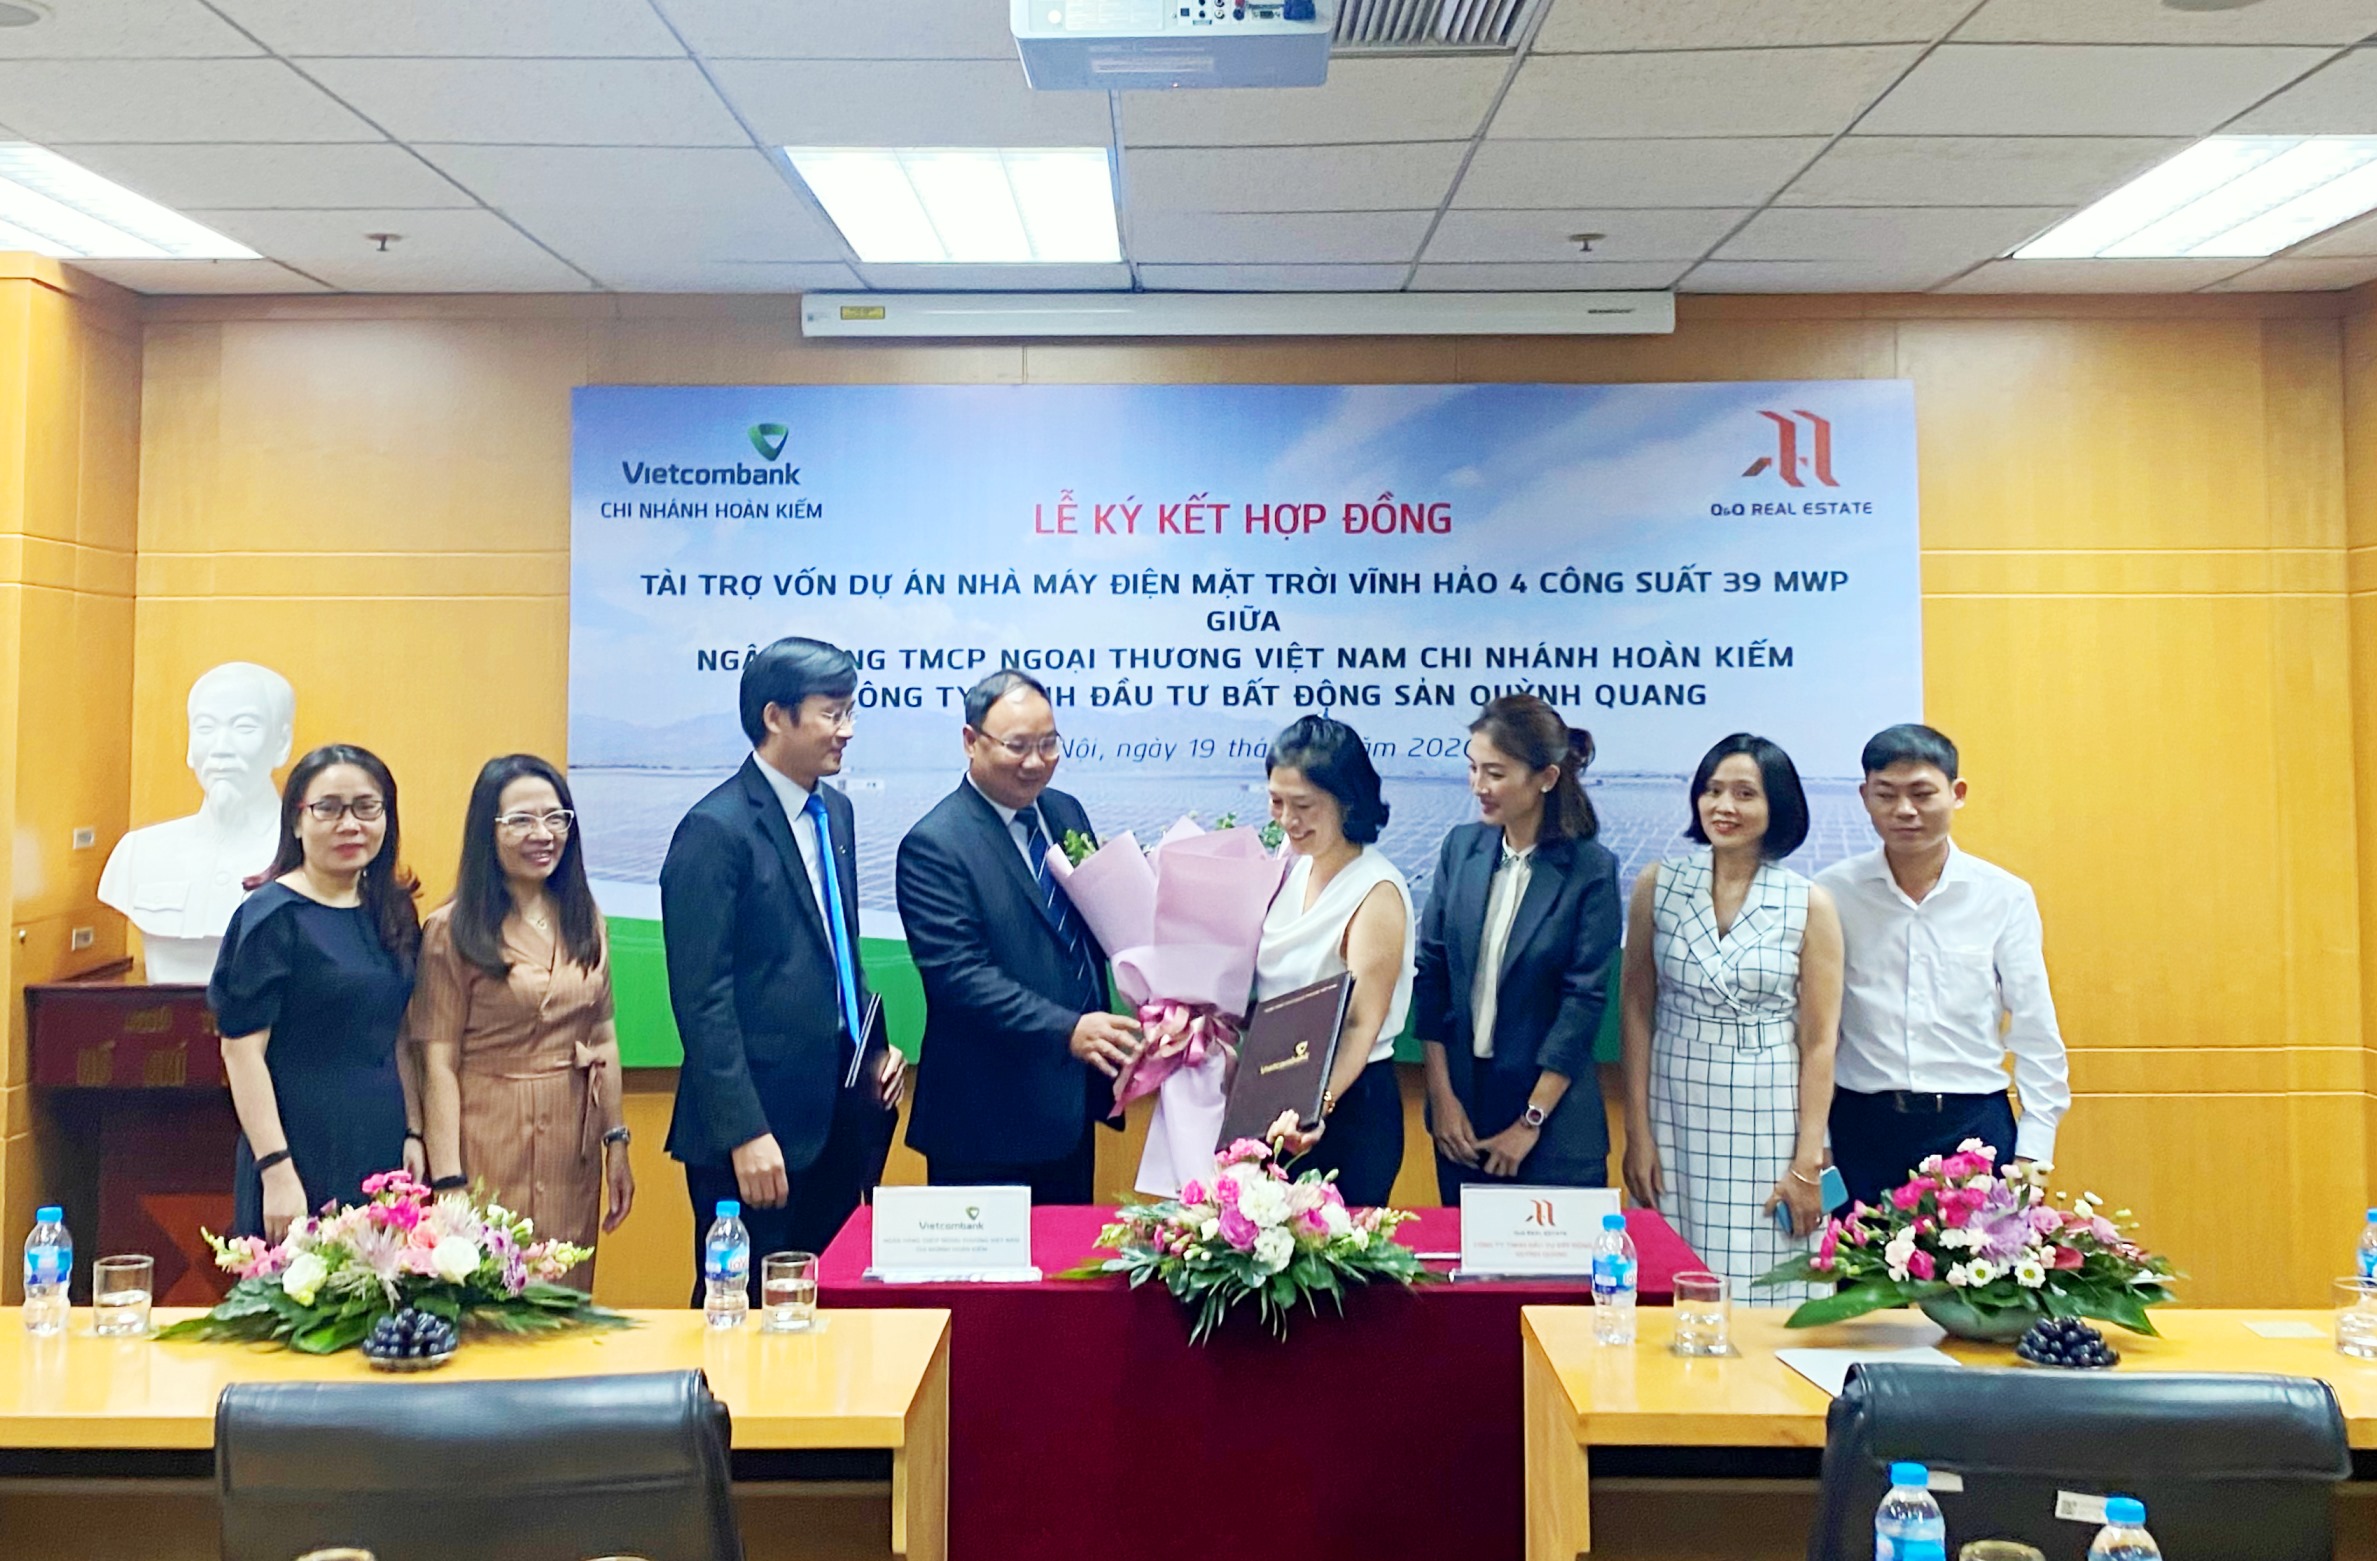 Lễ ký kết Hợp đồng tài trợ dự án giữa Vietcombank Hoàn Kiếm và Công ty TNHH Đầu tư Bất động sản Quỳnh Quang